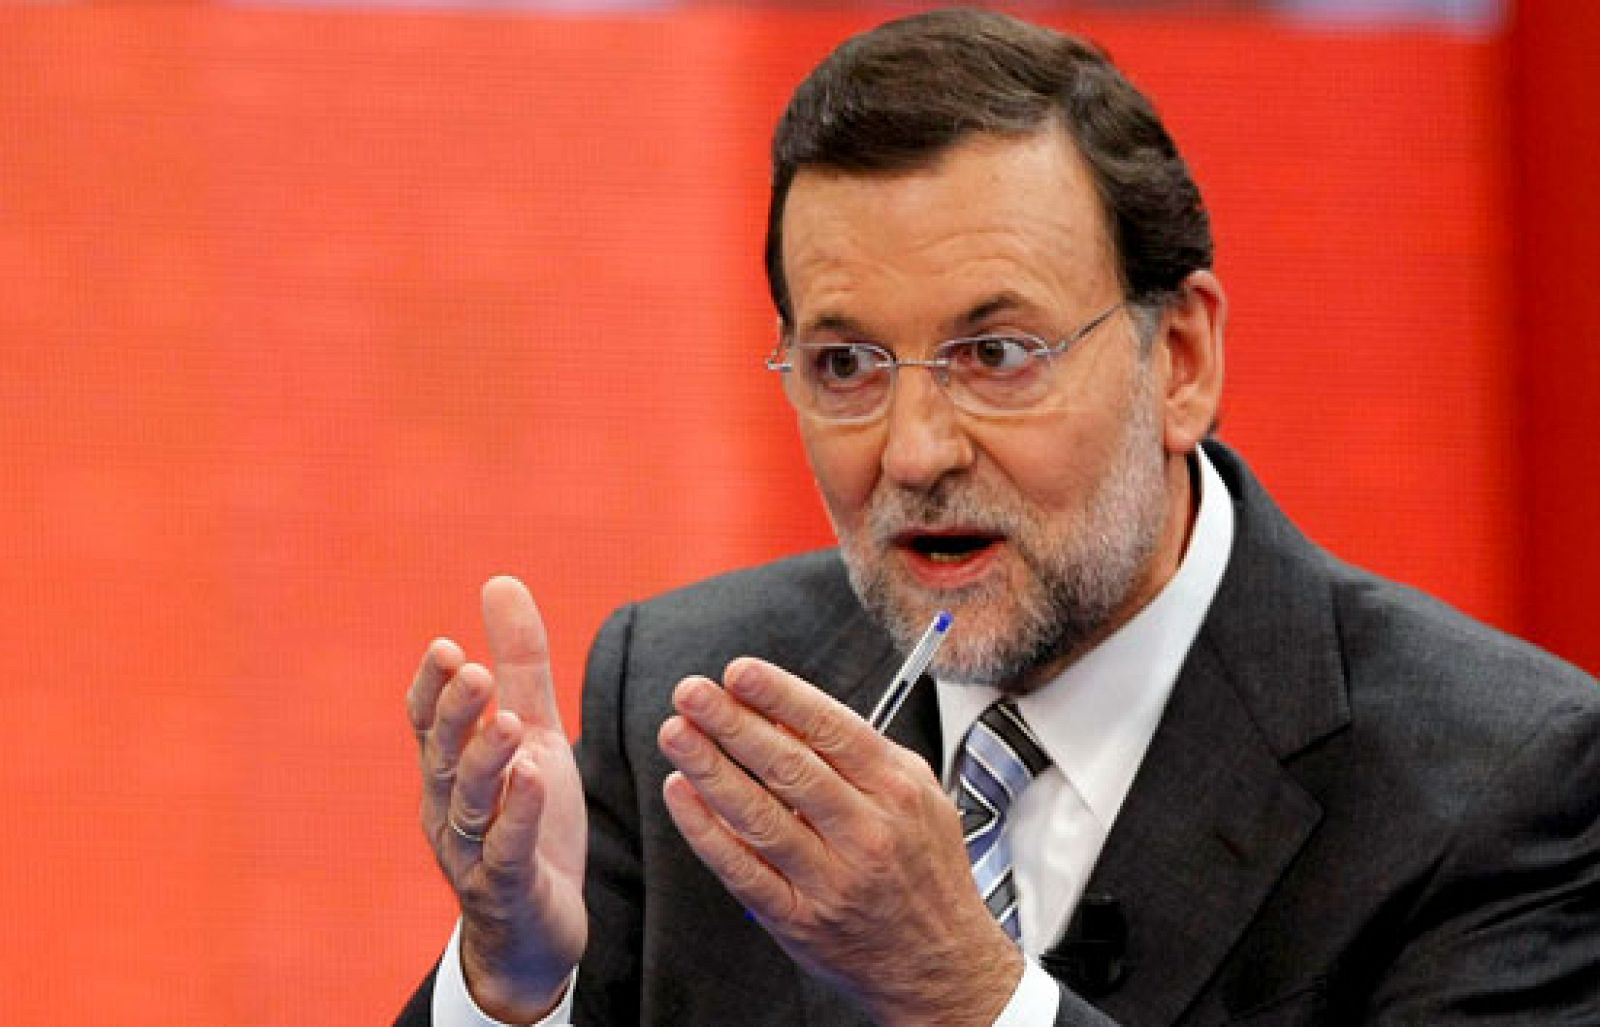 Tengo una pregunta para usted - Mariano Rajoy responde en 'Tengo una pregunta para usted' las preguntas de 33 ciudadanos